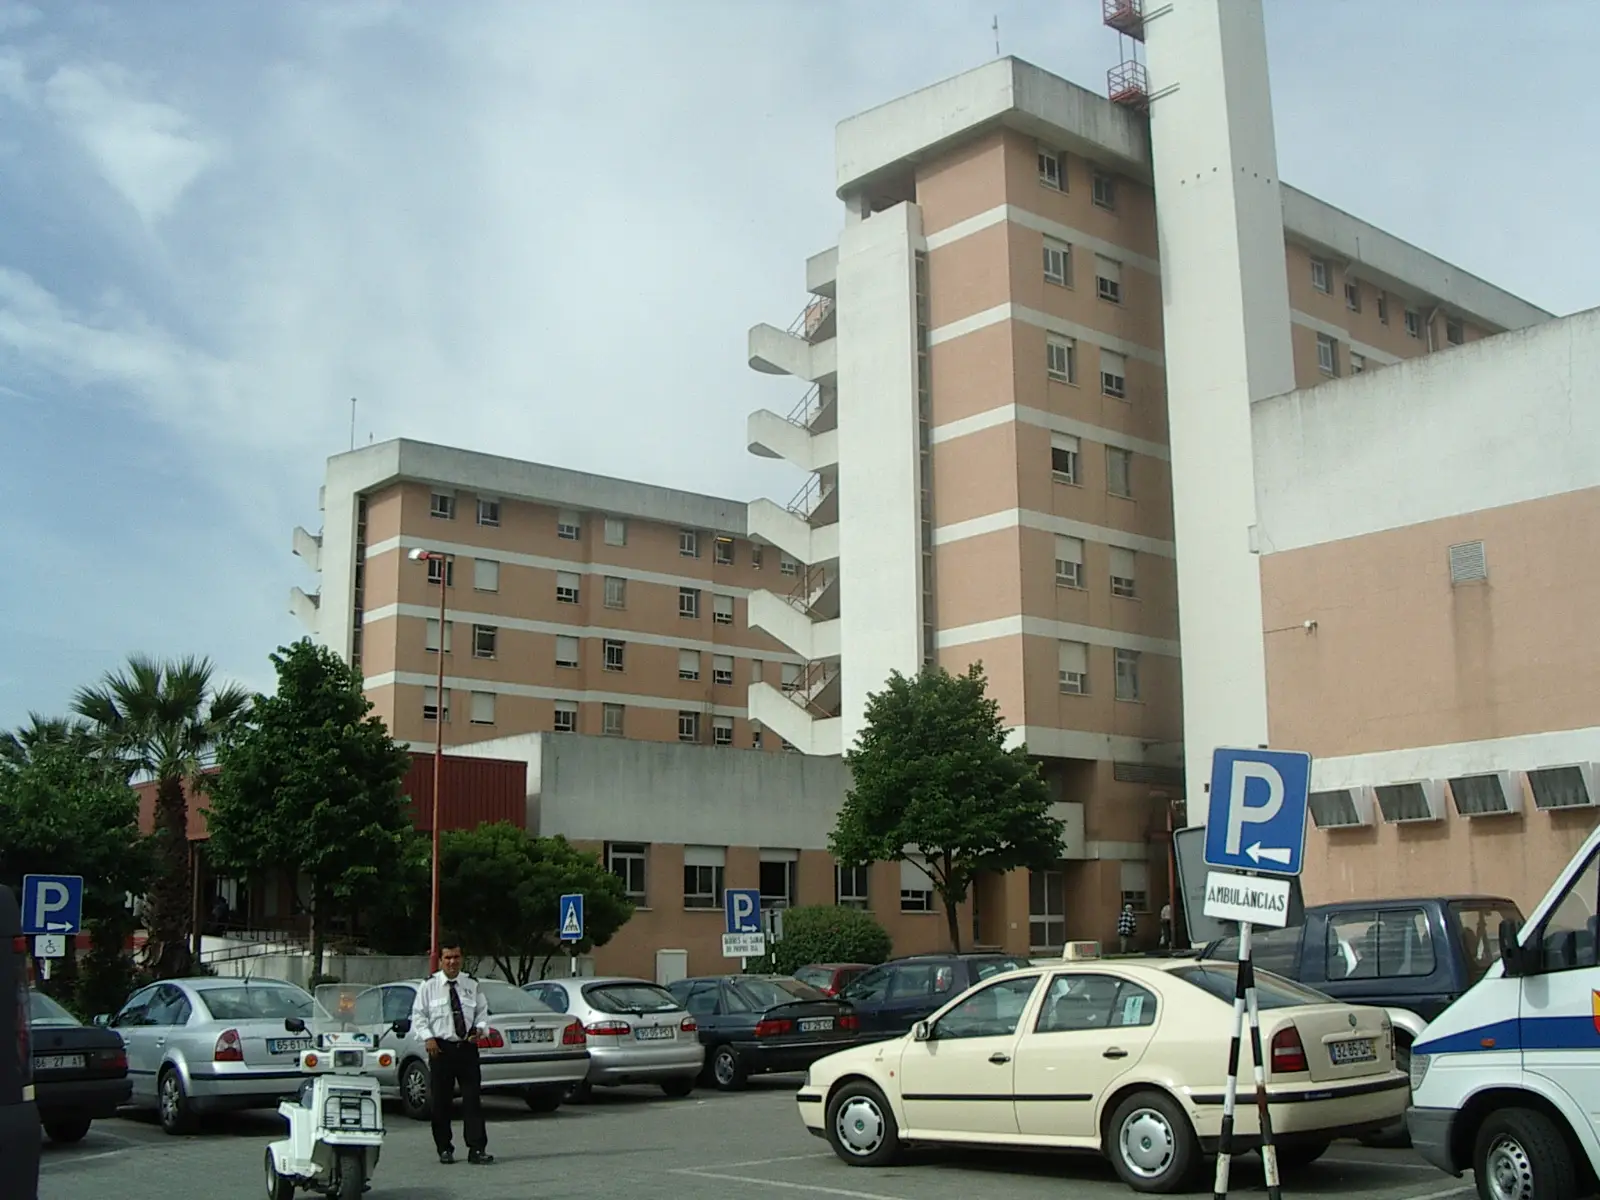 Chefes de equipa das urgências do Hospital de Almada apresentam demissão